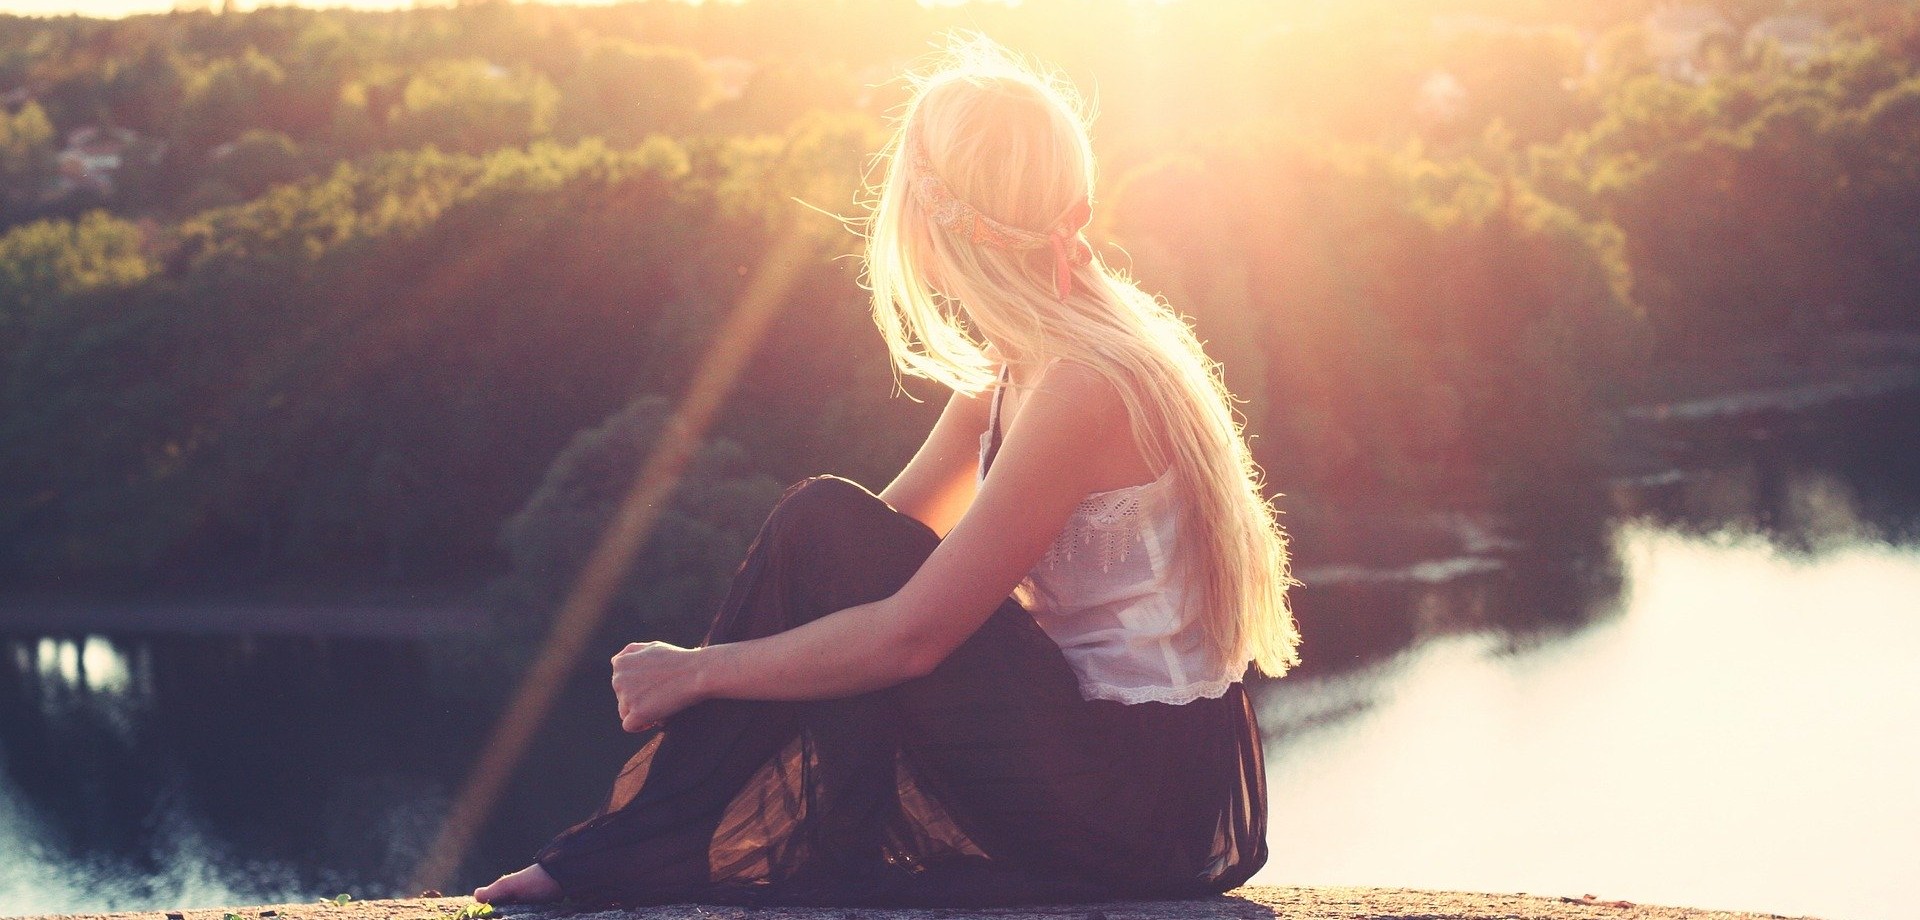 Eine junge Frau mit langen, hellblonden Haaren sitzt barfuß auf einem Felsen und schaut in die Sonne, die ihr Gericht direkt anstrahlt